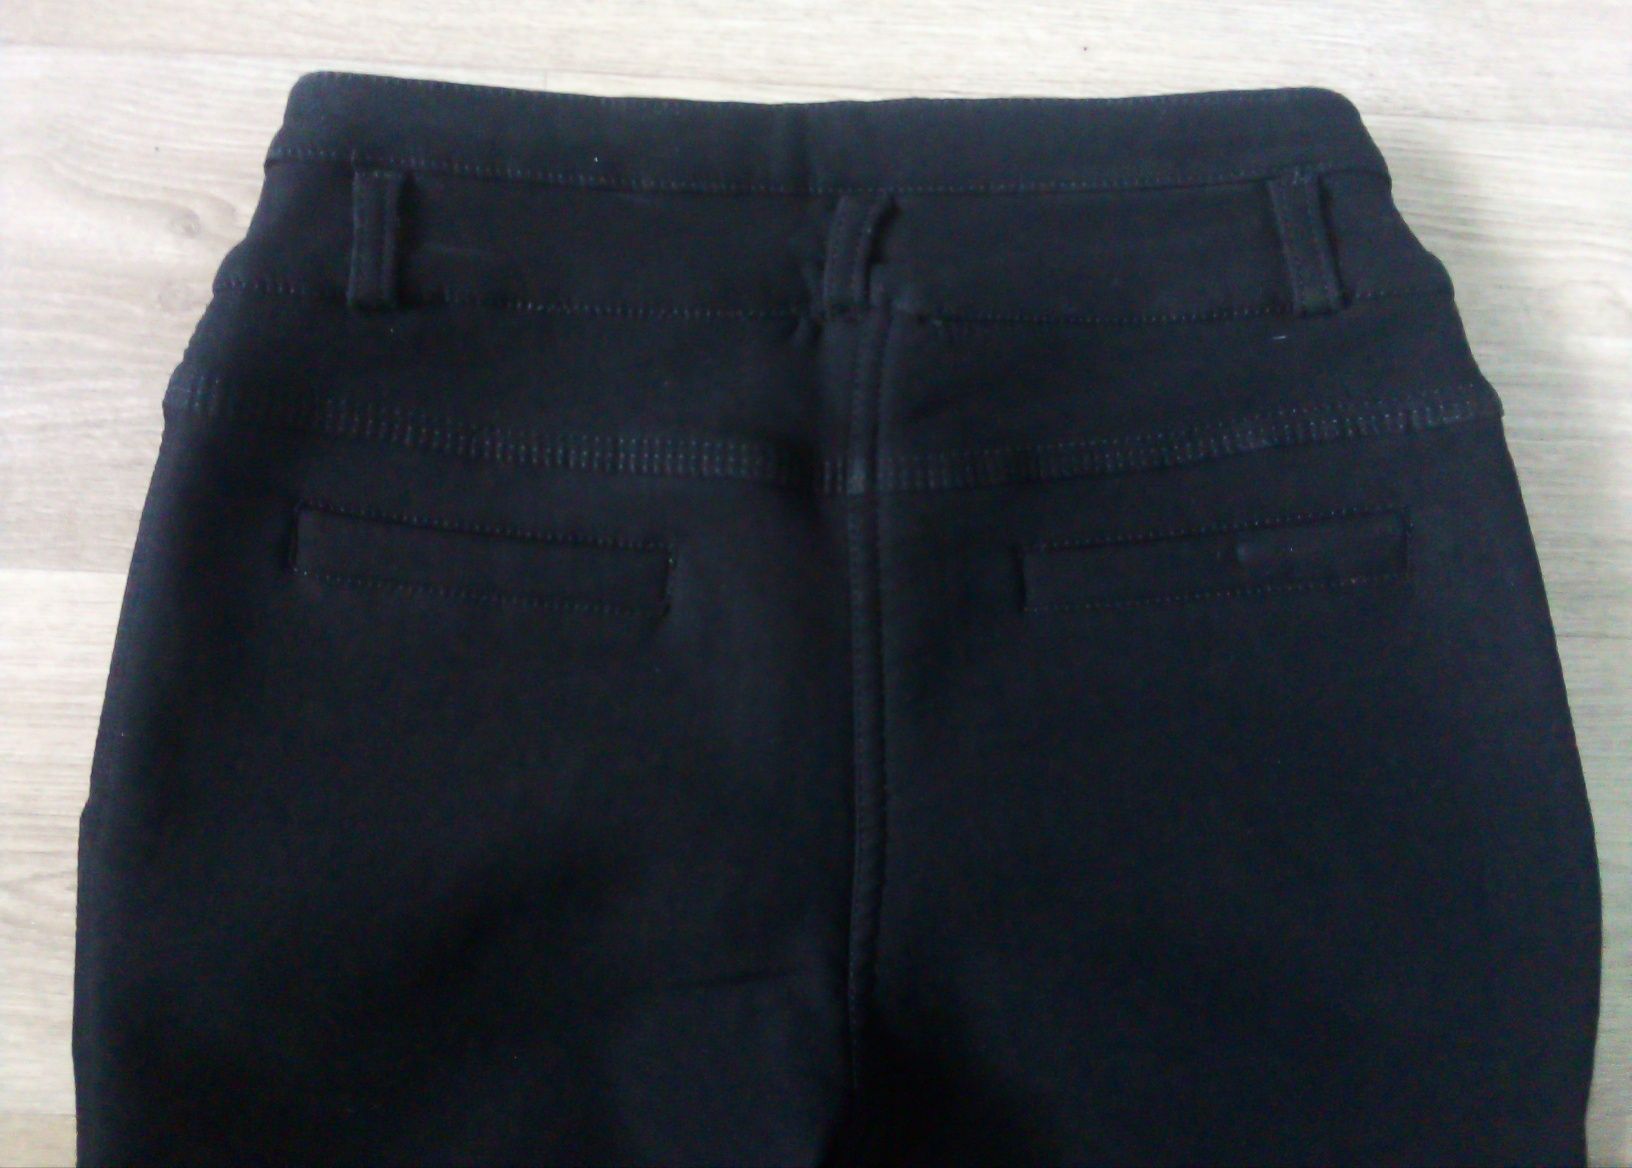 Штаны чёрные, брюки, лосины, джинсы тёплые, на флисе, на 8-10 лет.